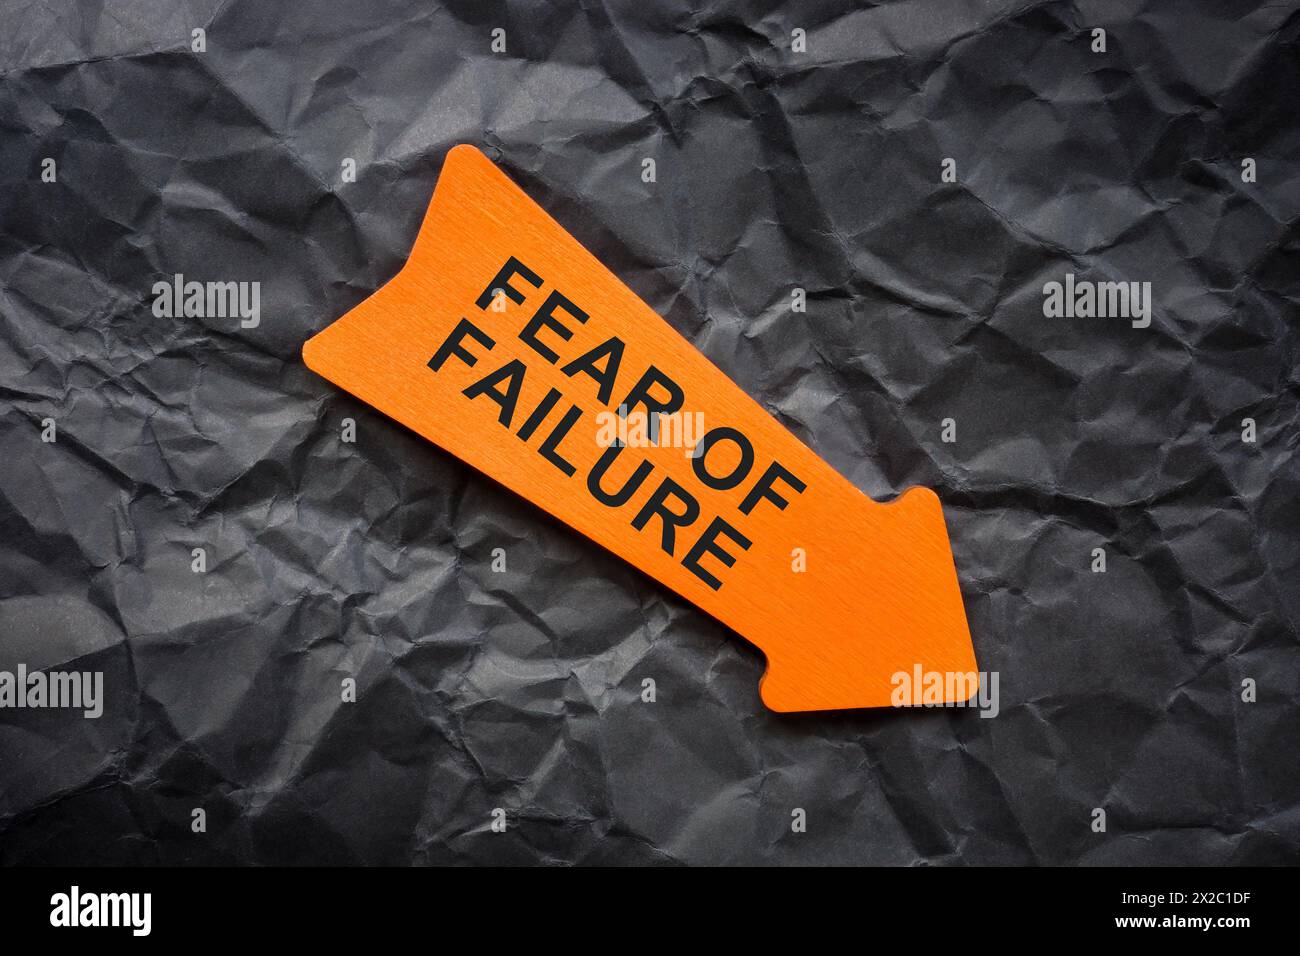 Kurzfassung über die Angst vor dem Versagen. Zerknittertes Papier und orangefarbener Pfeil. Stockfoto